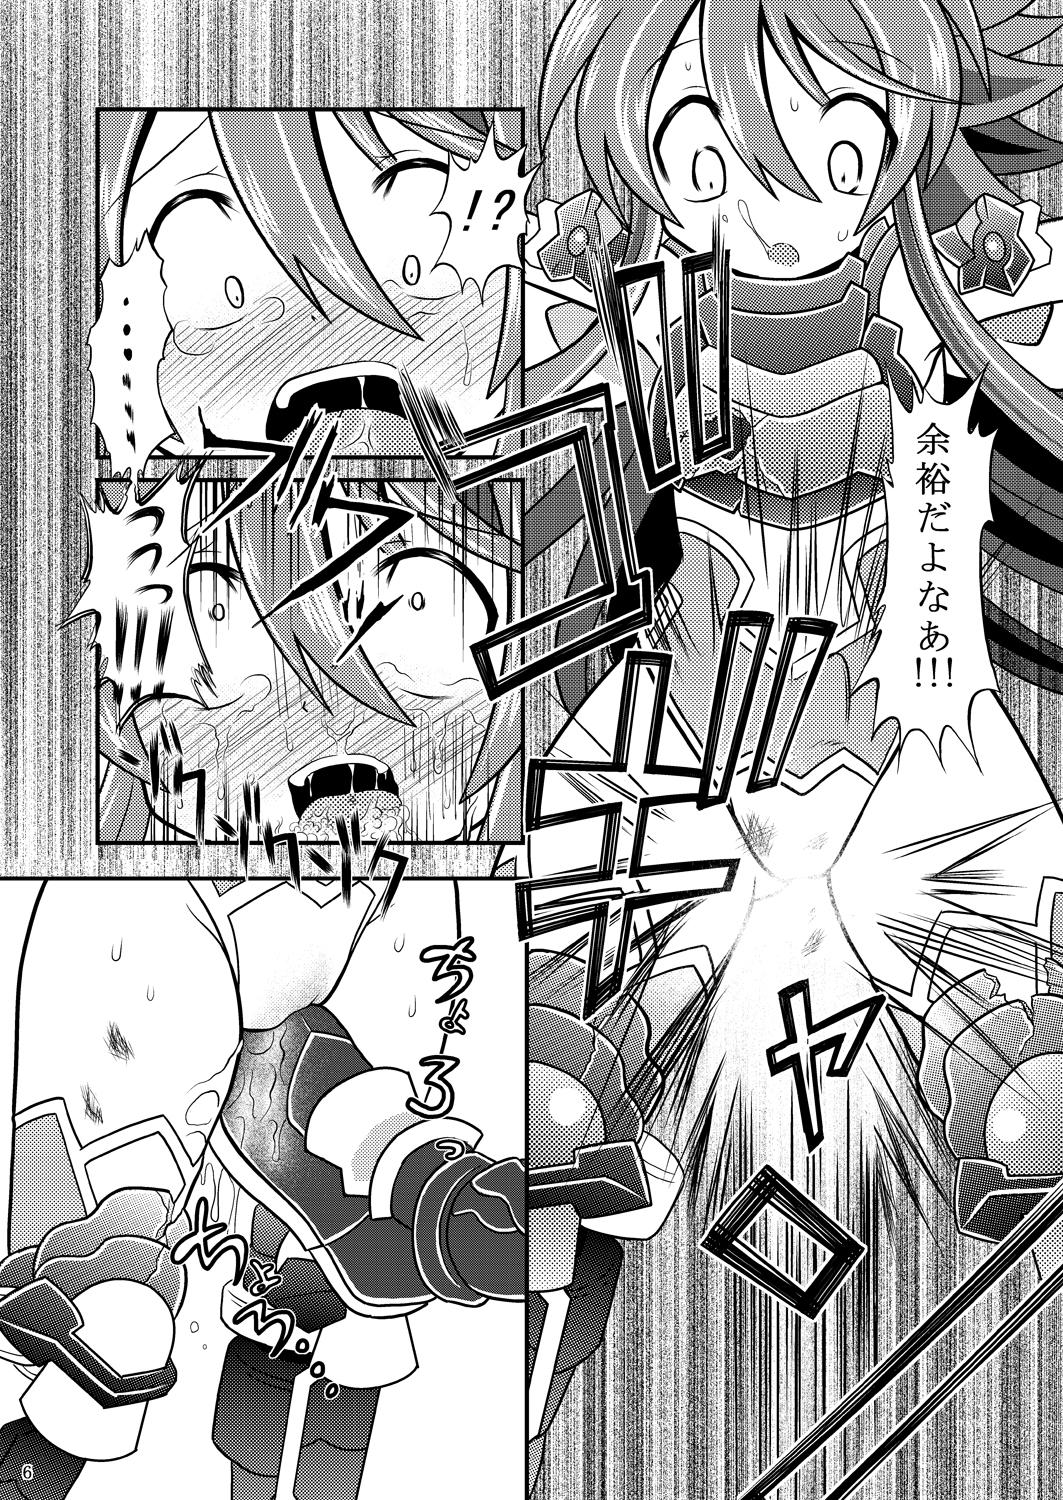 Fudendo Suireiken vs Zettai Bouryoku - Shinrabansho Sologirl - Page 5